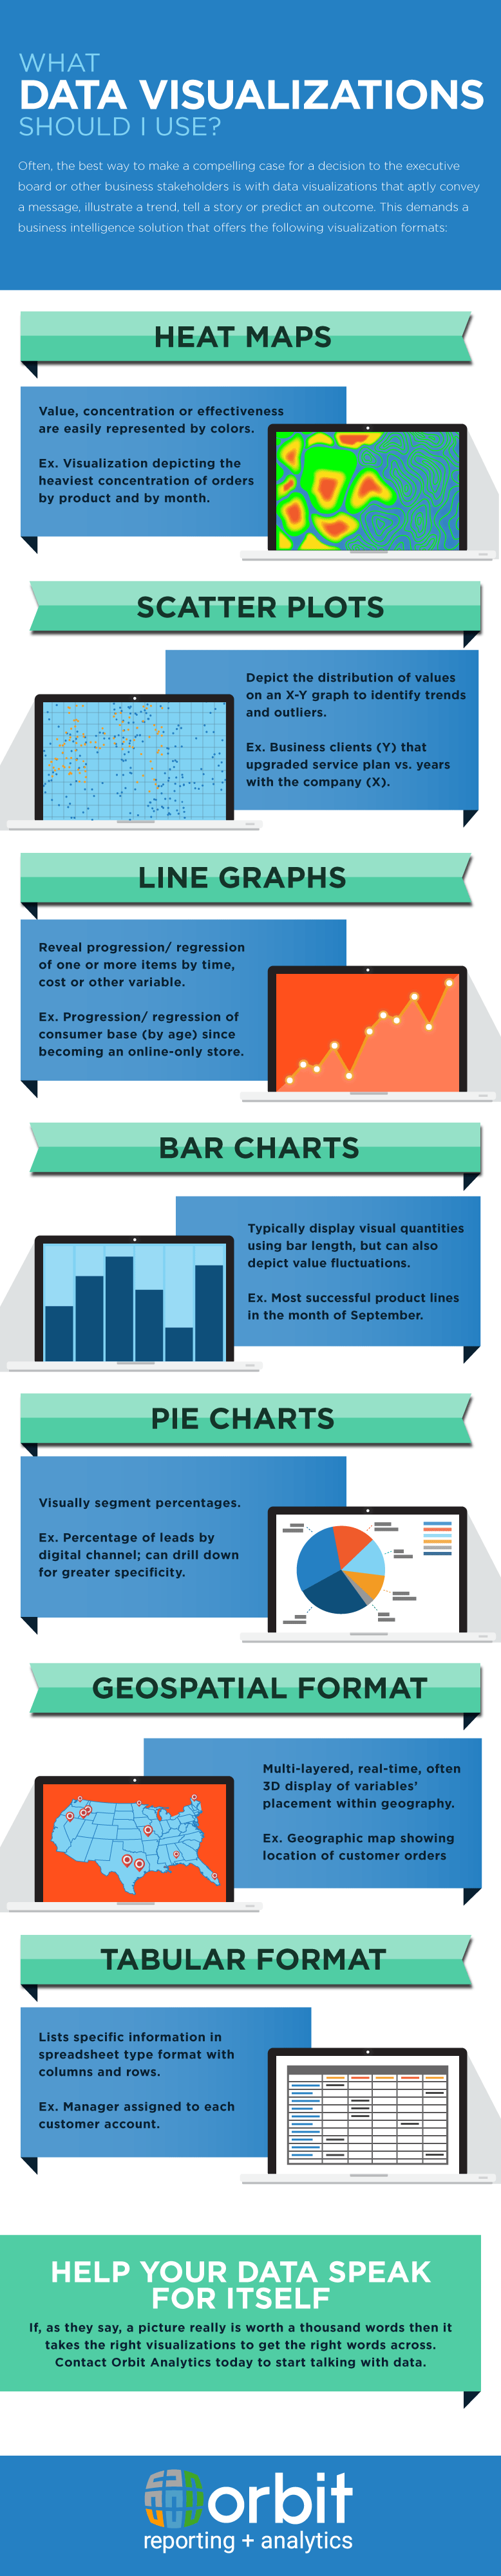 DataViz Infographic